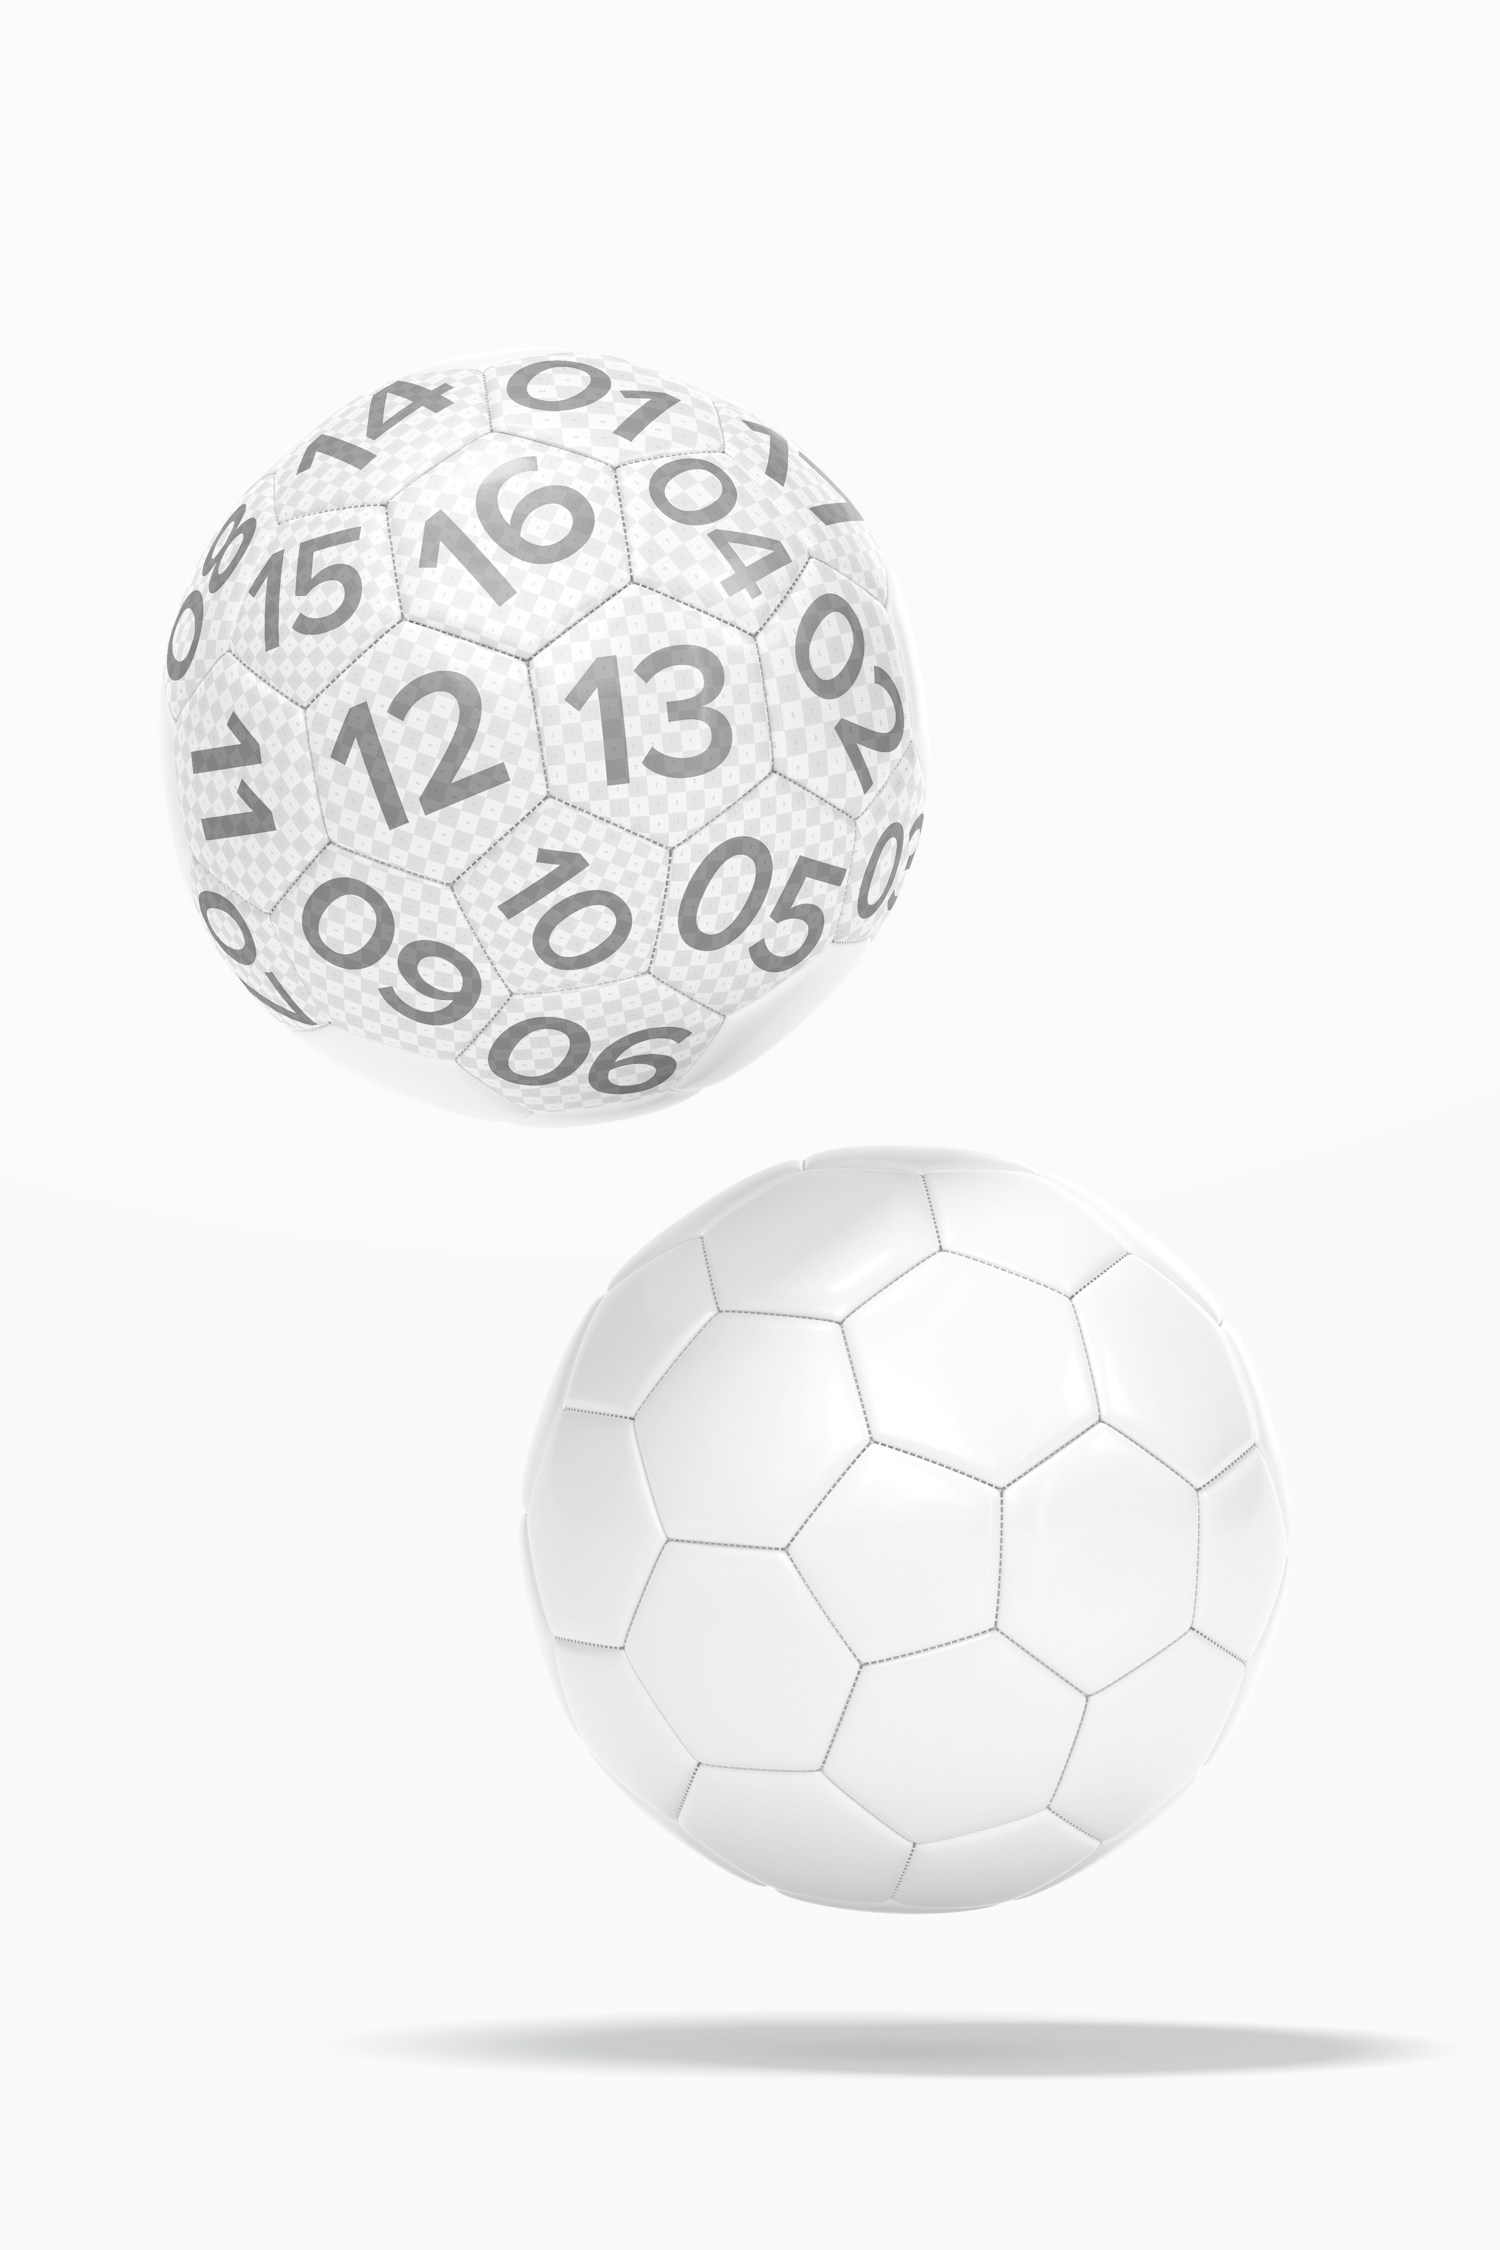 Soccer Balls Mockup, Floating